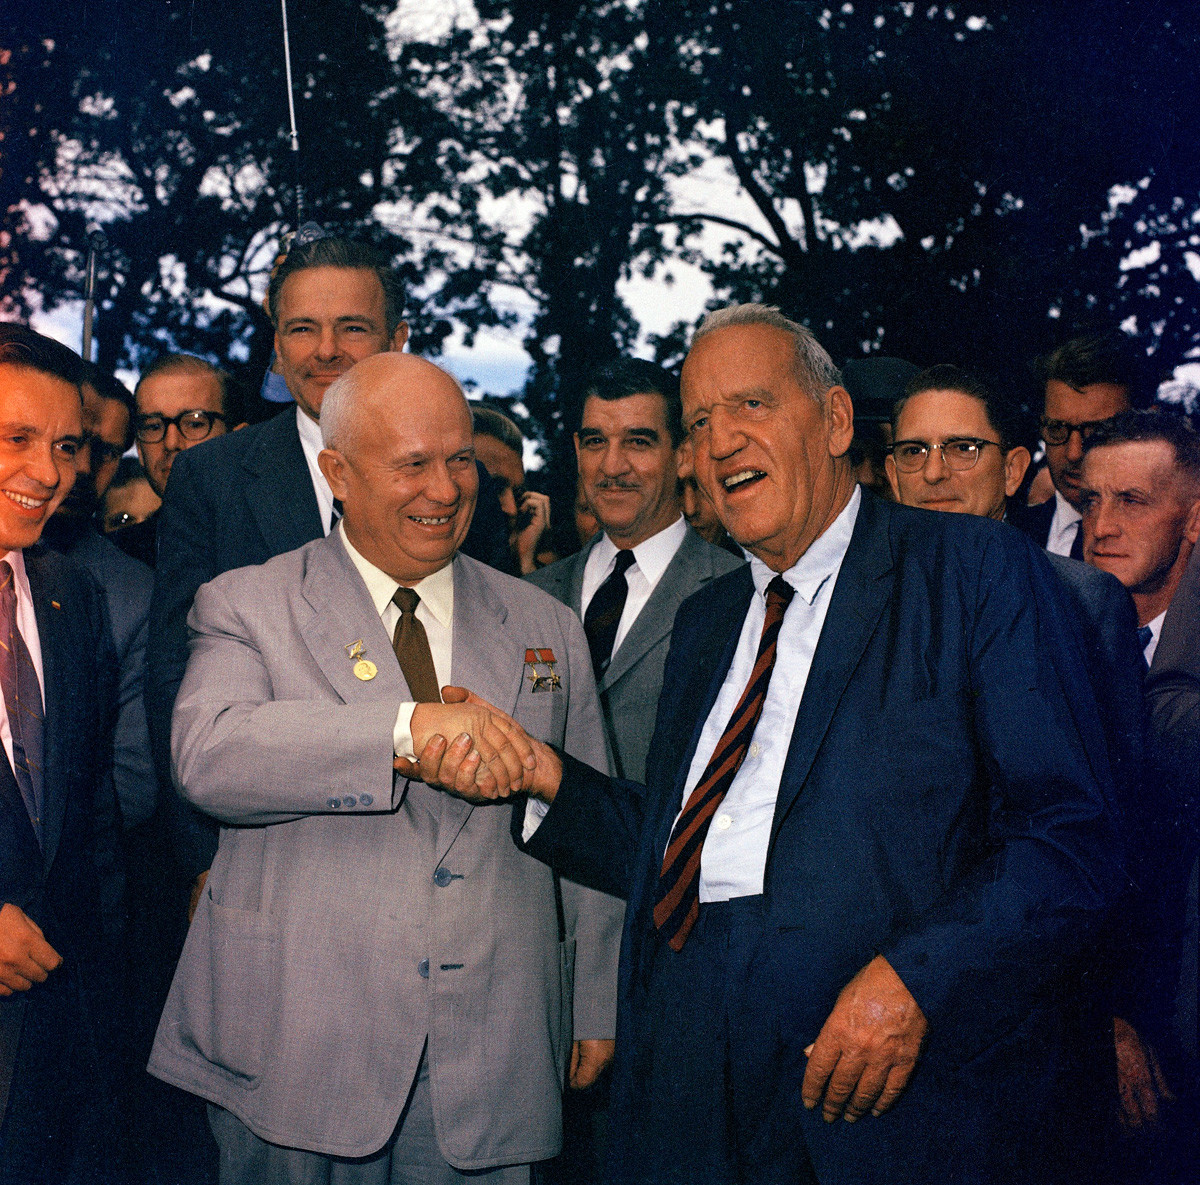  Съветският министър председател Никита Хрушчов (вляво) стиска ръката на Розуел Гарст, фермер от Айова, при който е на посещаване, 23 септември 1959 година 